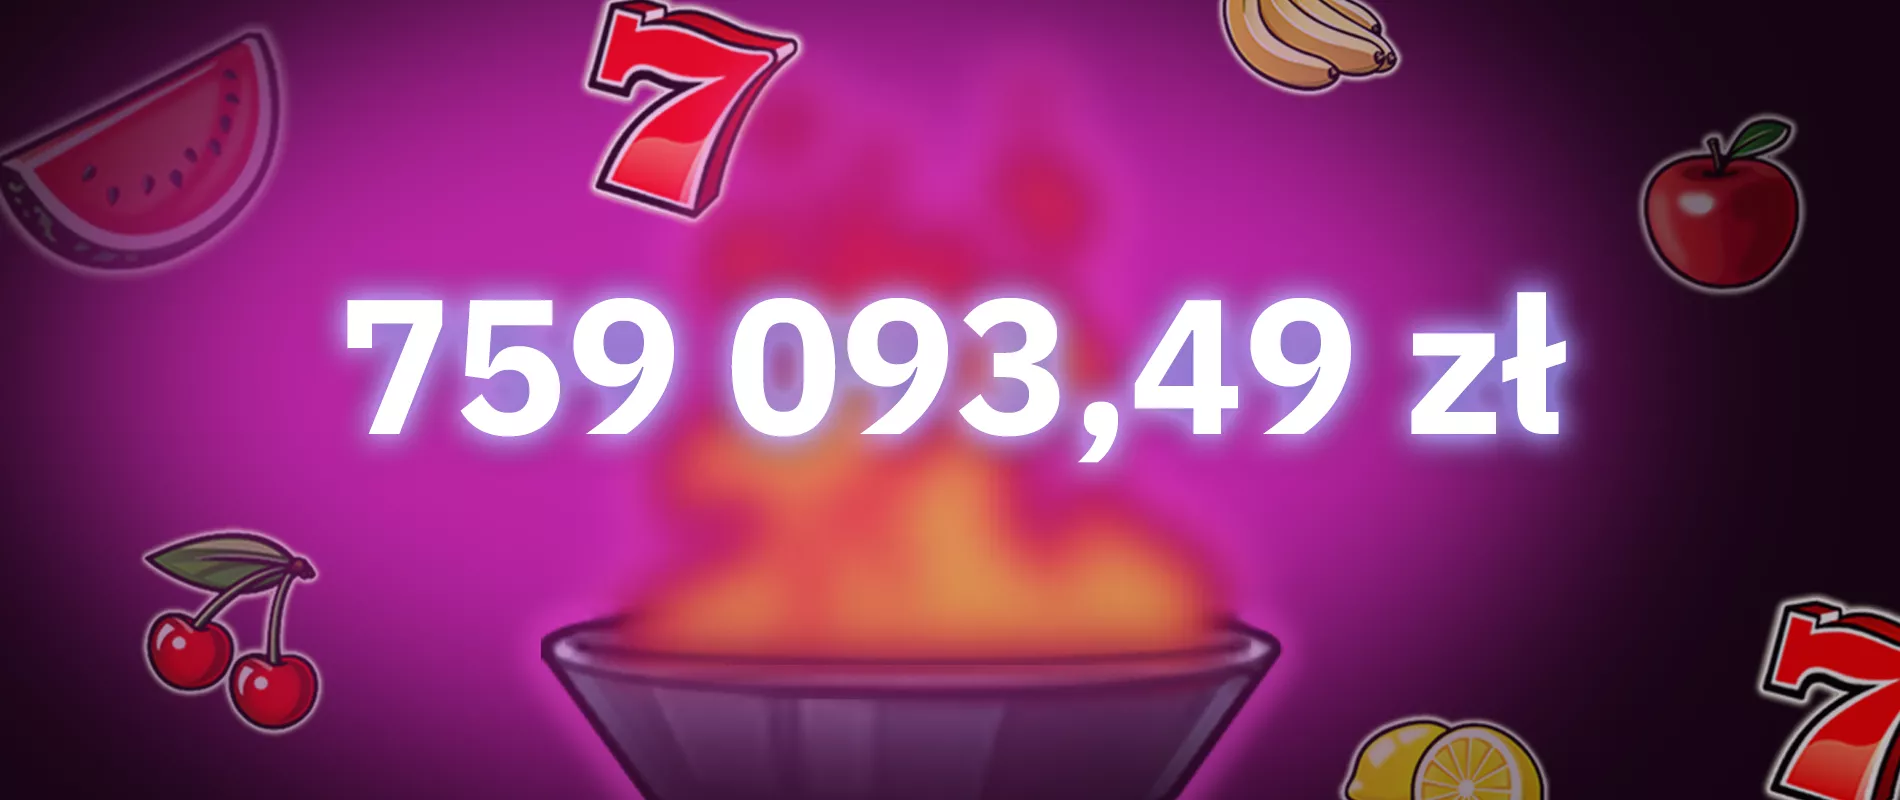 Super wygrana w Purple Hot - mega Jackpot w kwocie 759 093 złotych